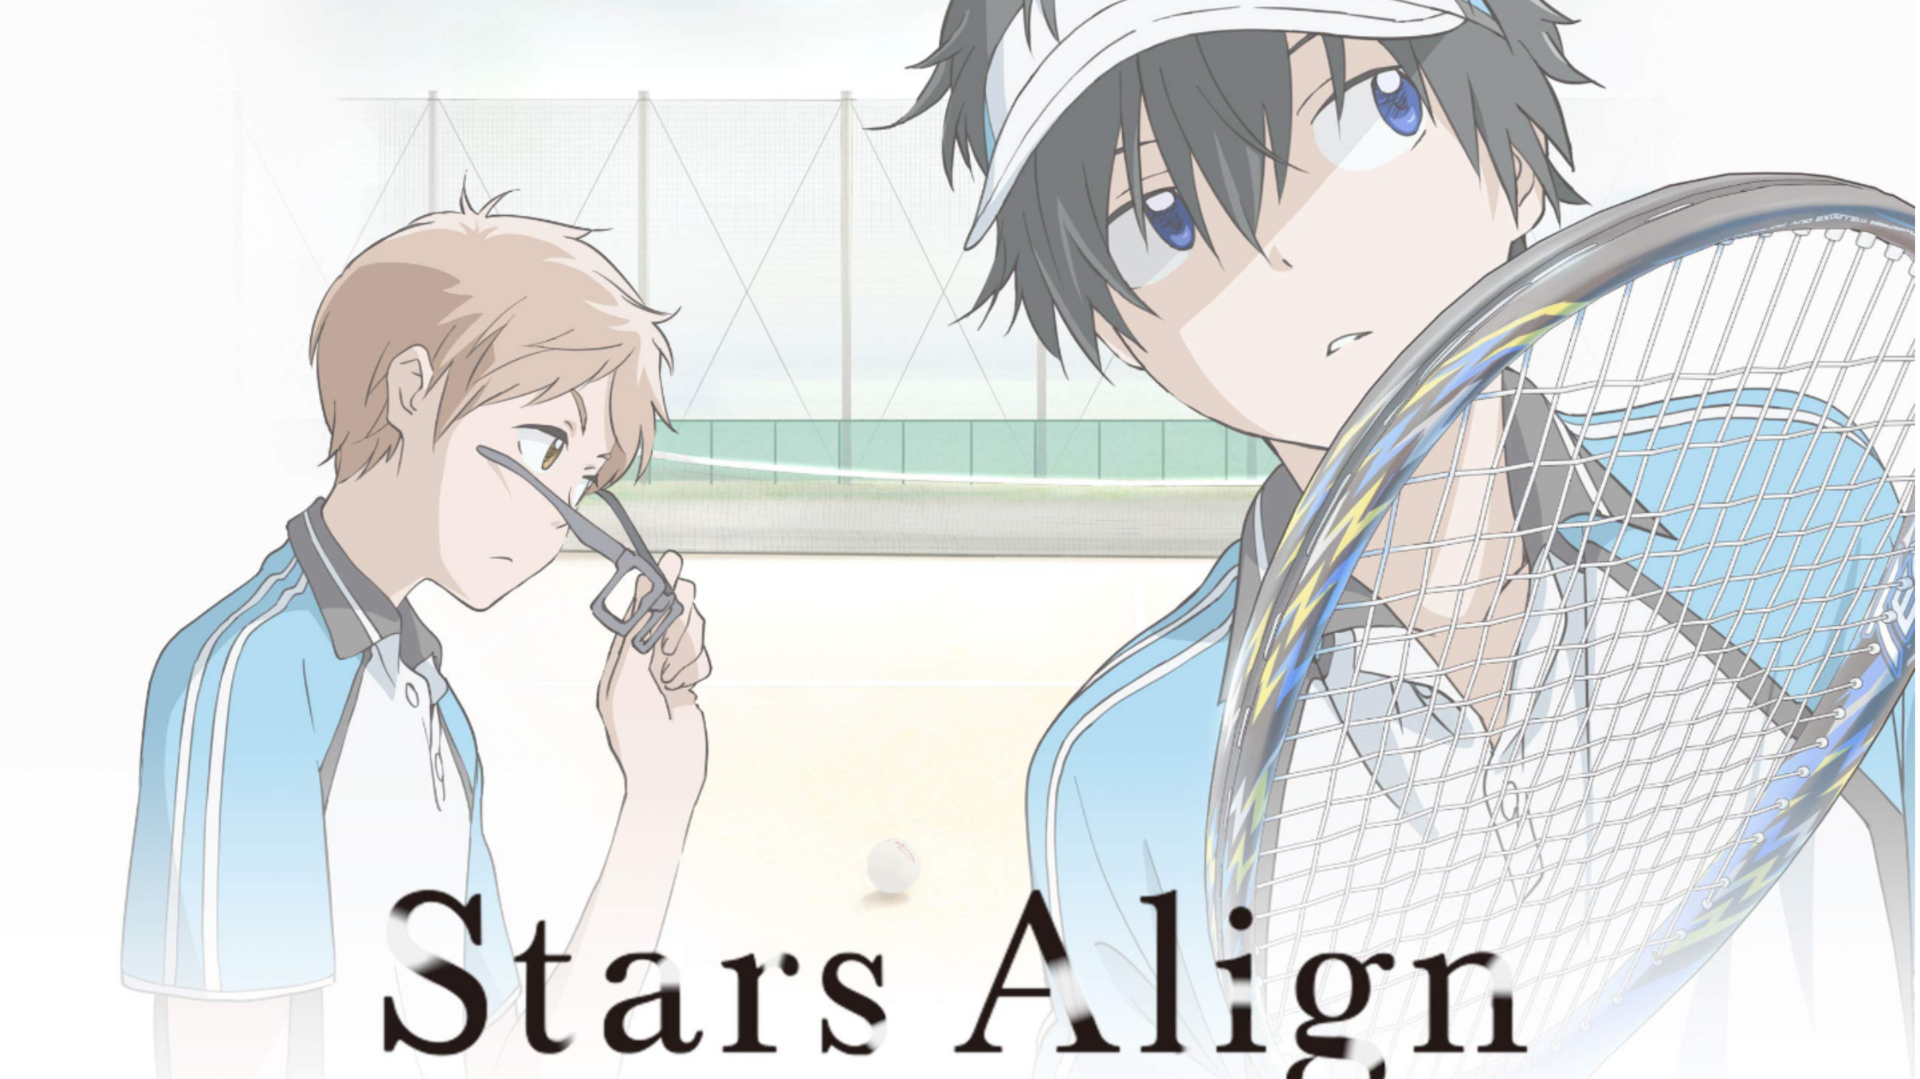 Estrelas Alinham a arte chave com Toma e Maki em seus equipamentos de tênis.